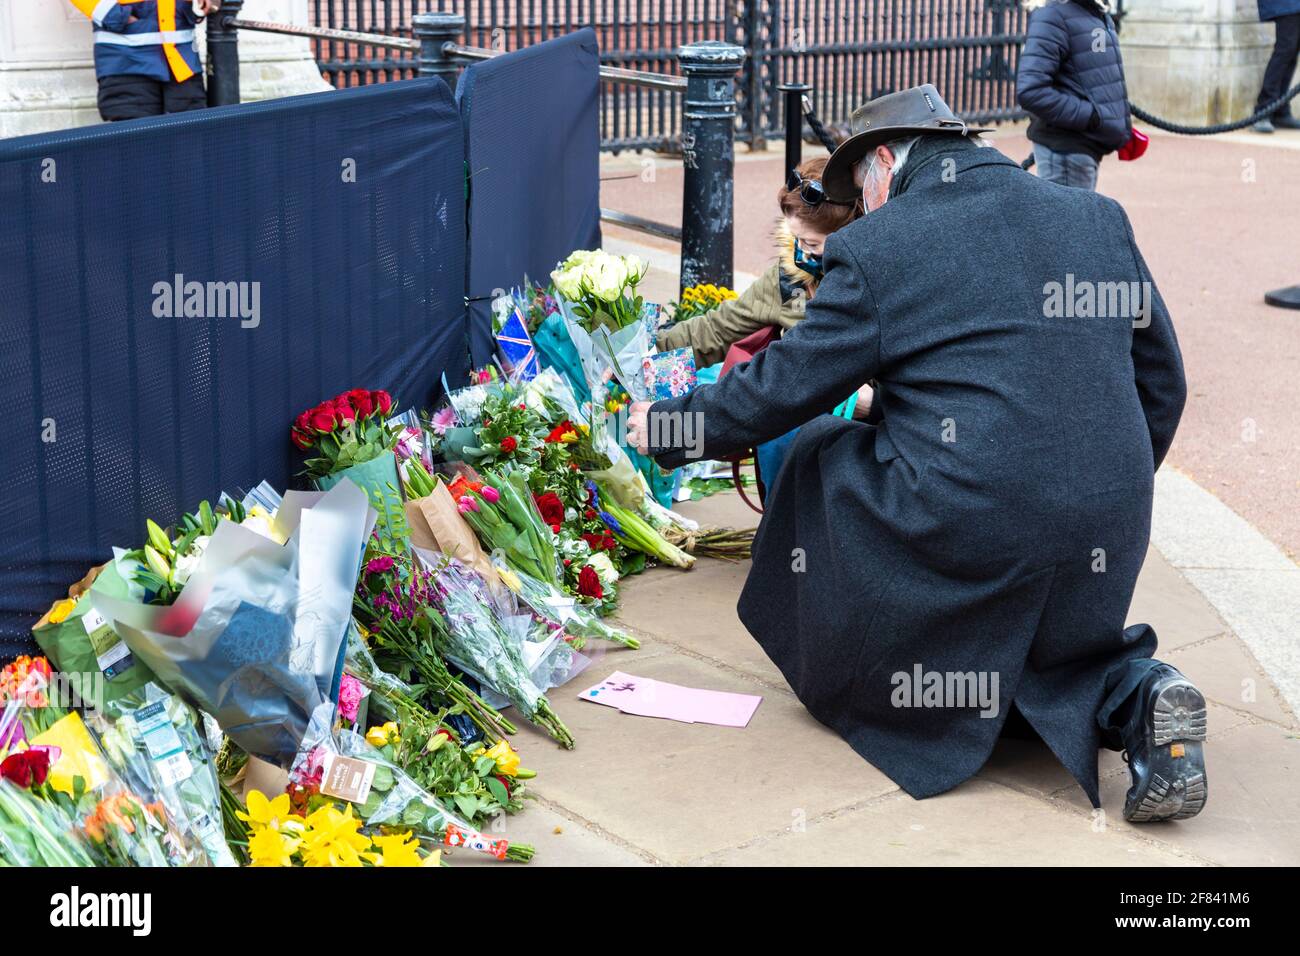 11. April 2021, London, Großbritannien - Menschen, die Blumen zu Ehren von Prinz Philip, Herzog von Edinburgh, vor dem Buckingham Palace nach seinem Tod am 9. April legen Stockfoto